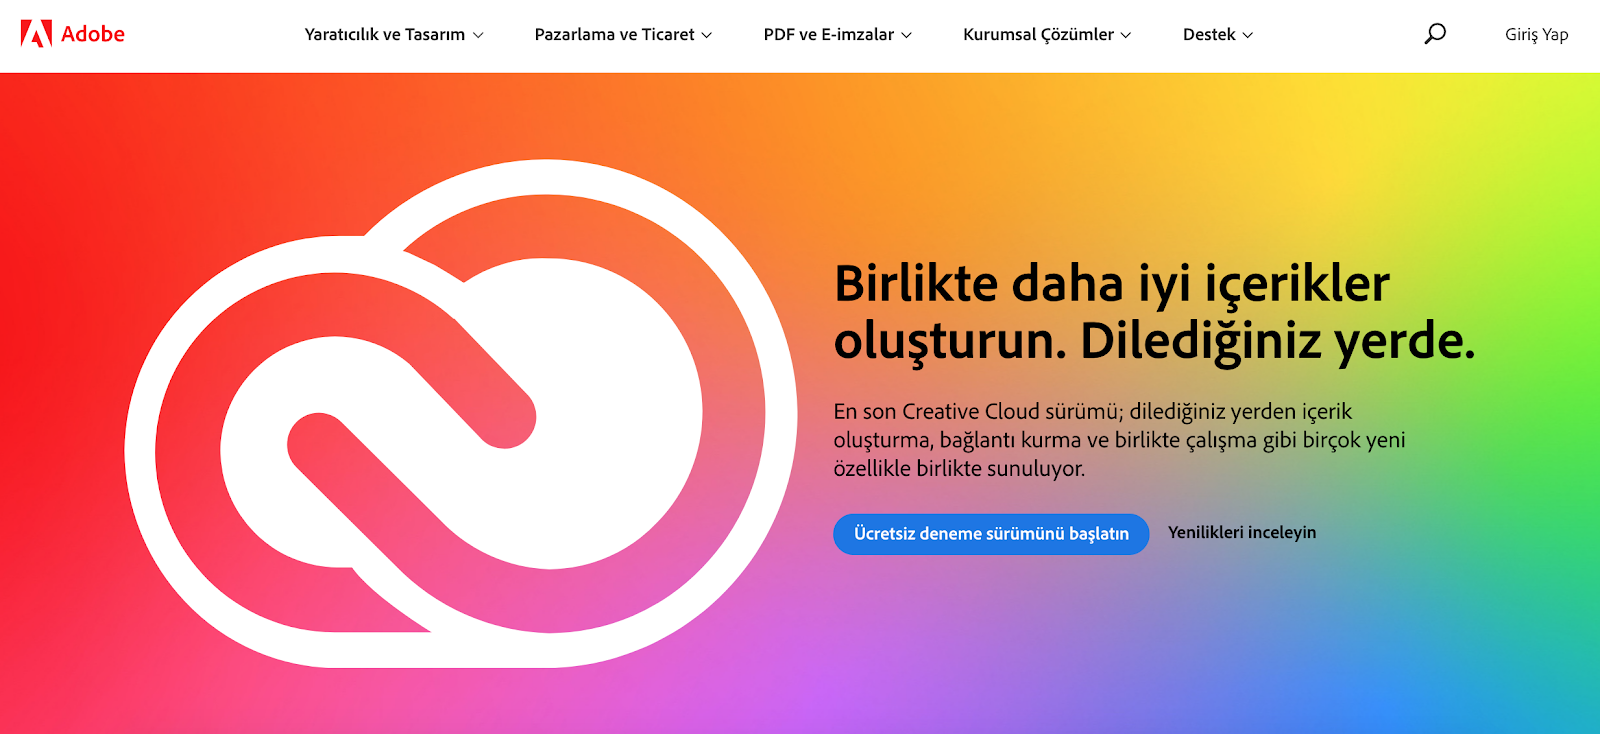 Adobe Turkish version of website 